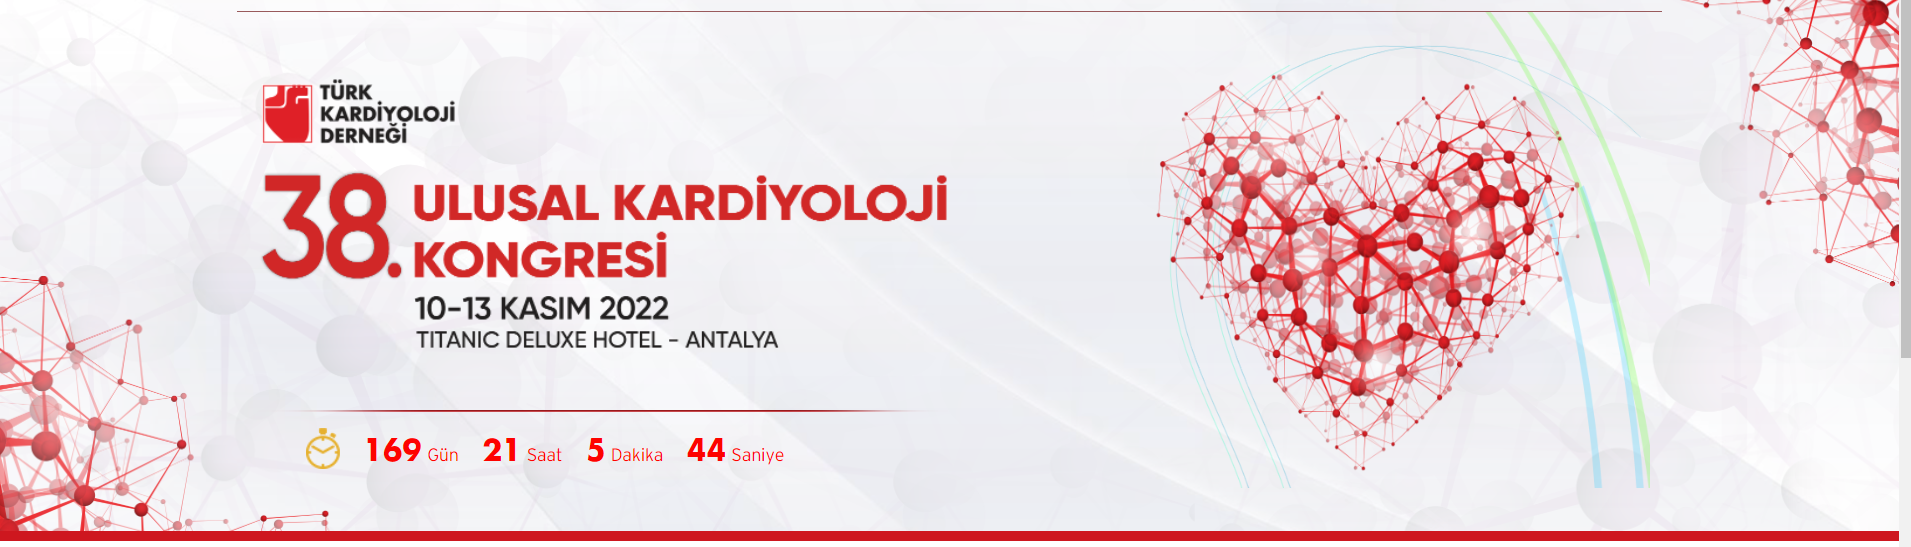 Türk Kardiyoloji Derneği 38. Ulusal Kardiyoloji Kongresi